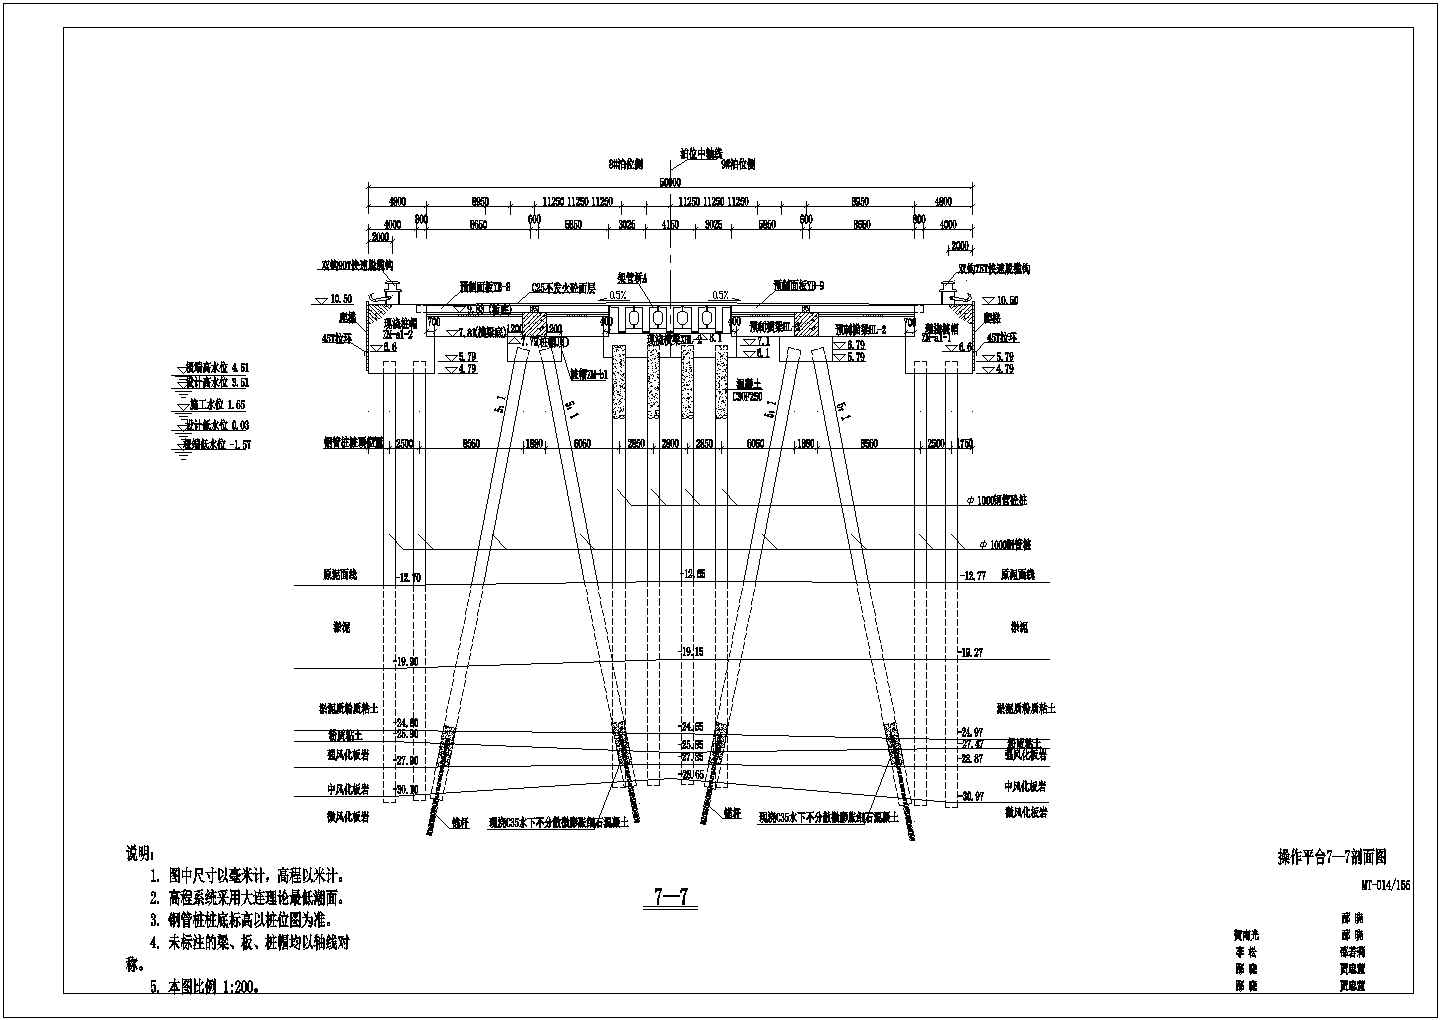 【大连】北良码头图纸操作平台剖面图纸